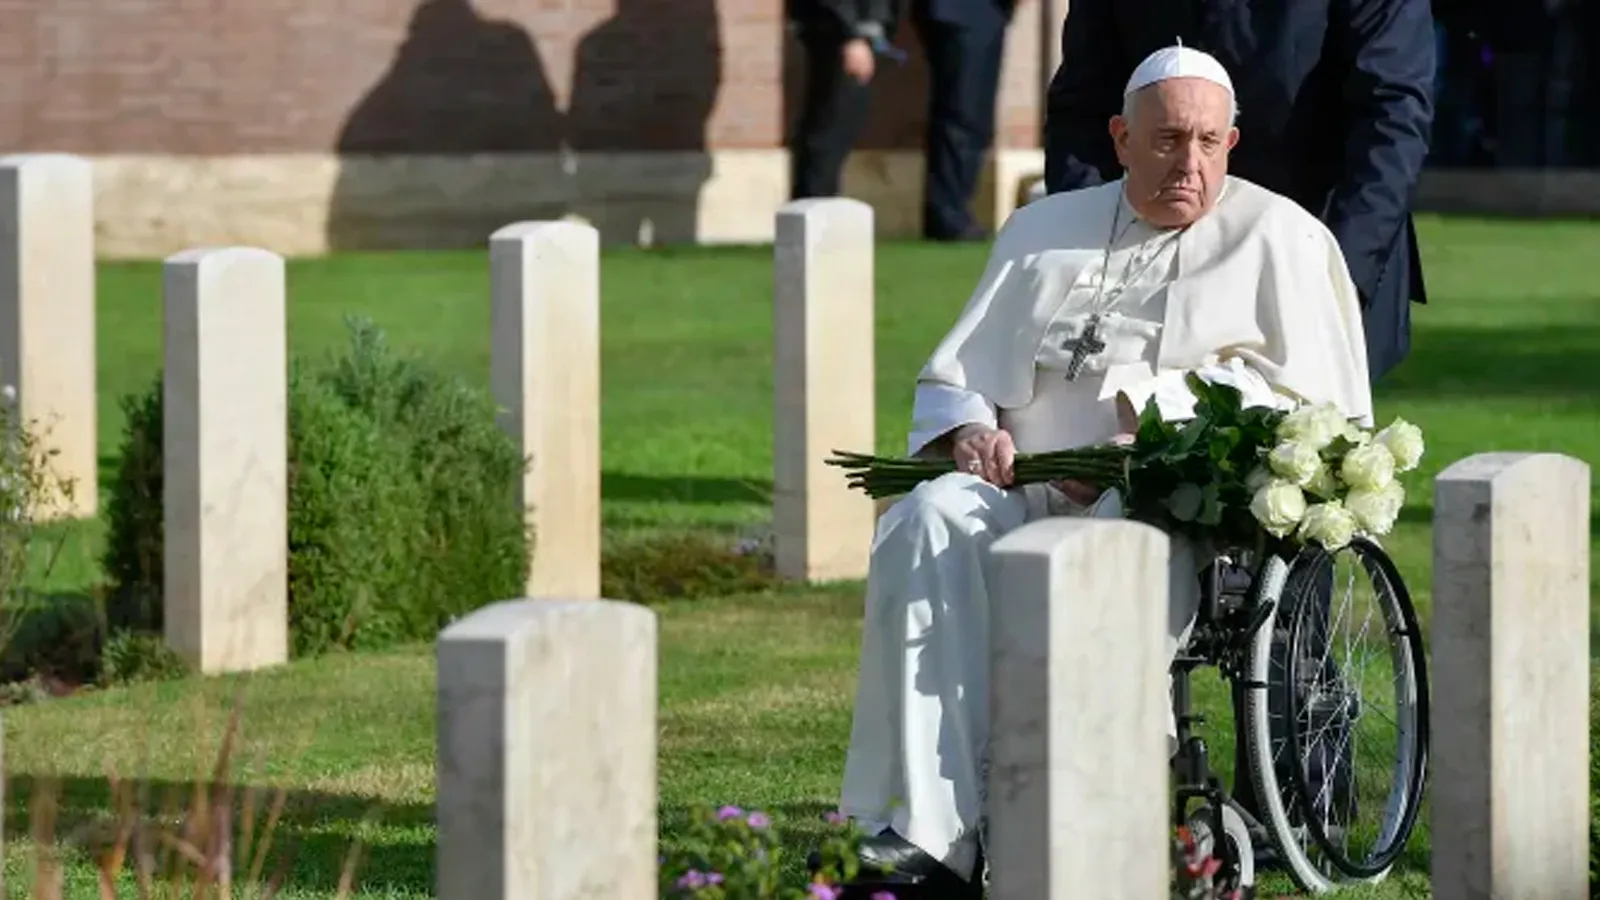 Antes de la Misa, el Papa Francisco recorrió las tumbas de los soldados en el Cementerio de Guerra de Roma, donde rezó y dejó una ofrenda floral?w=200&h=150